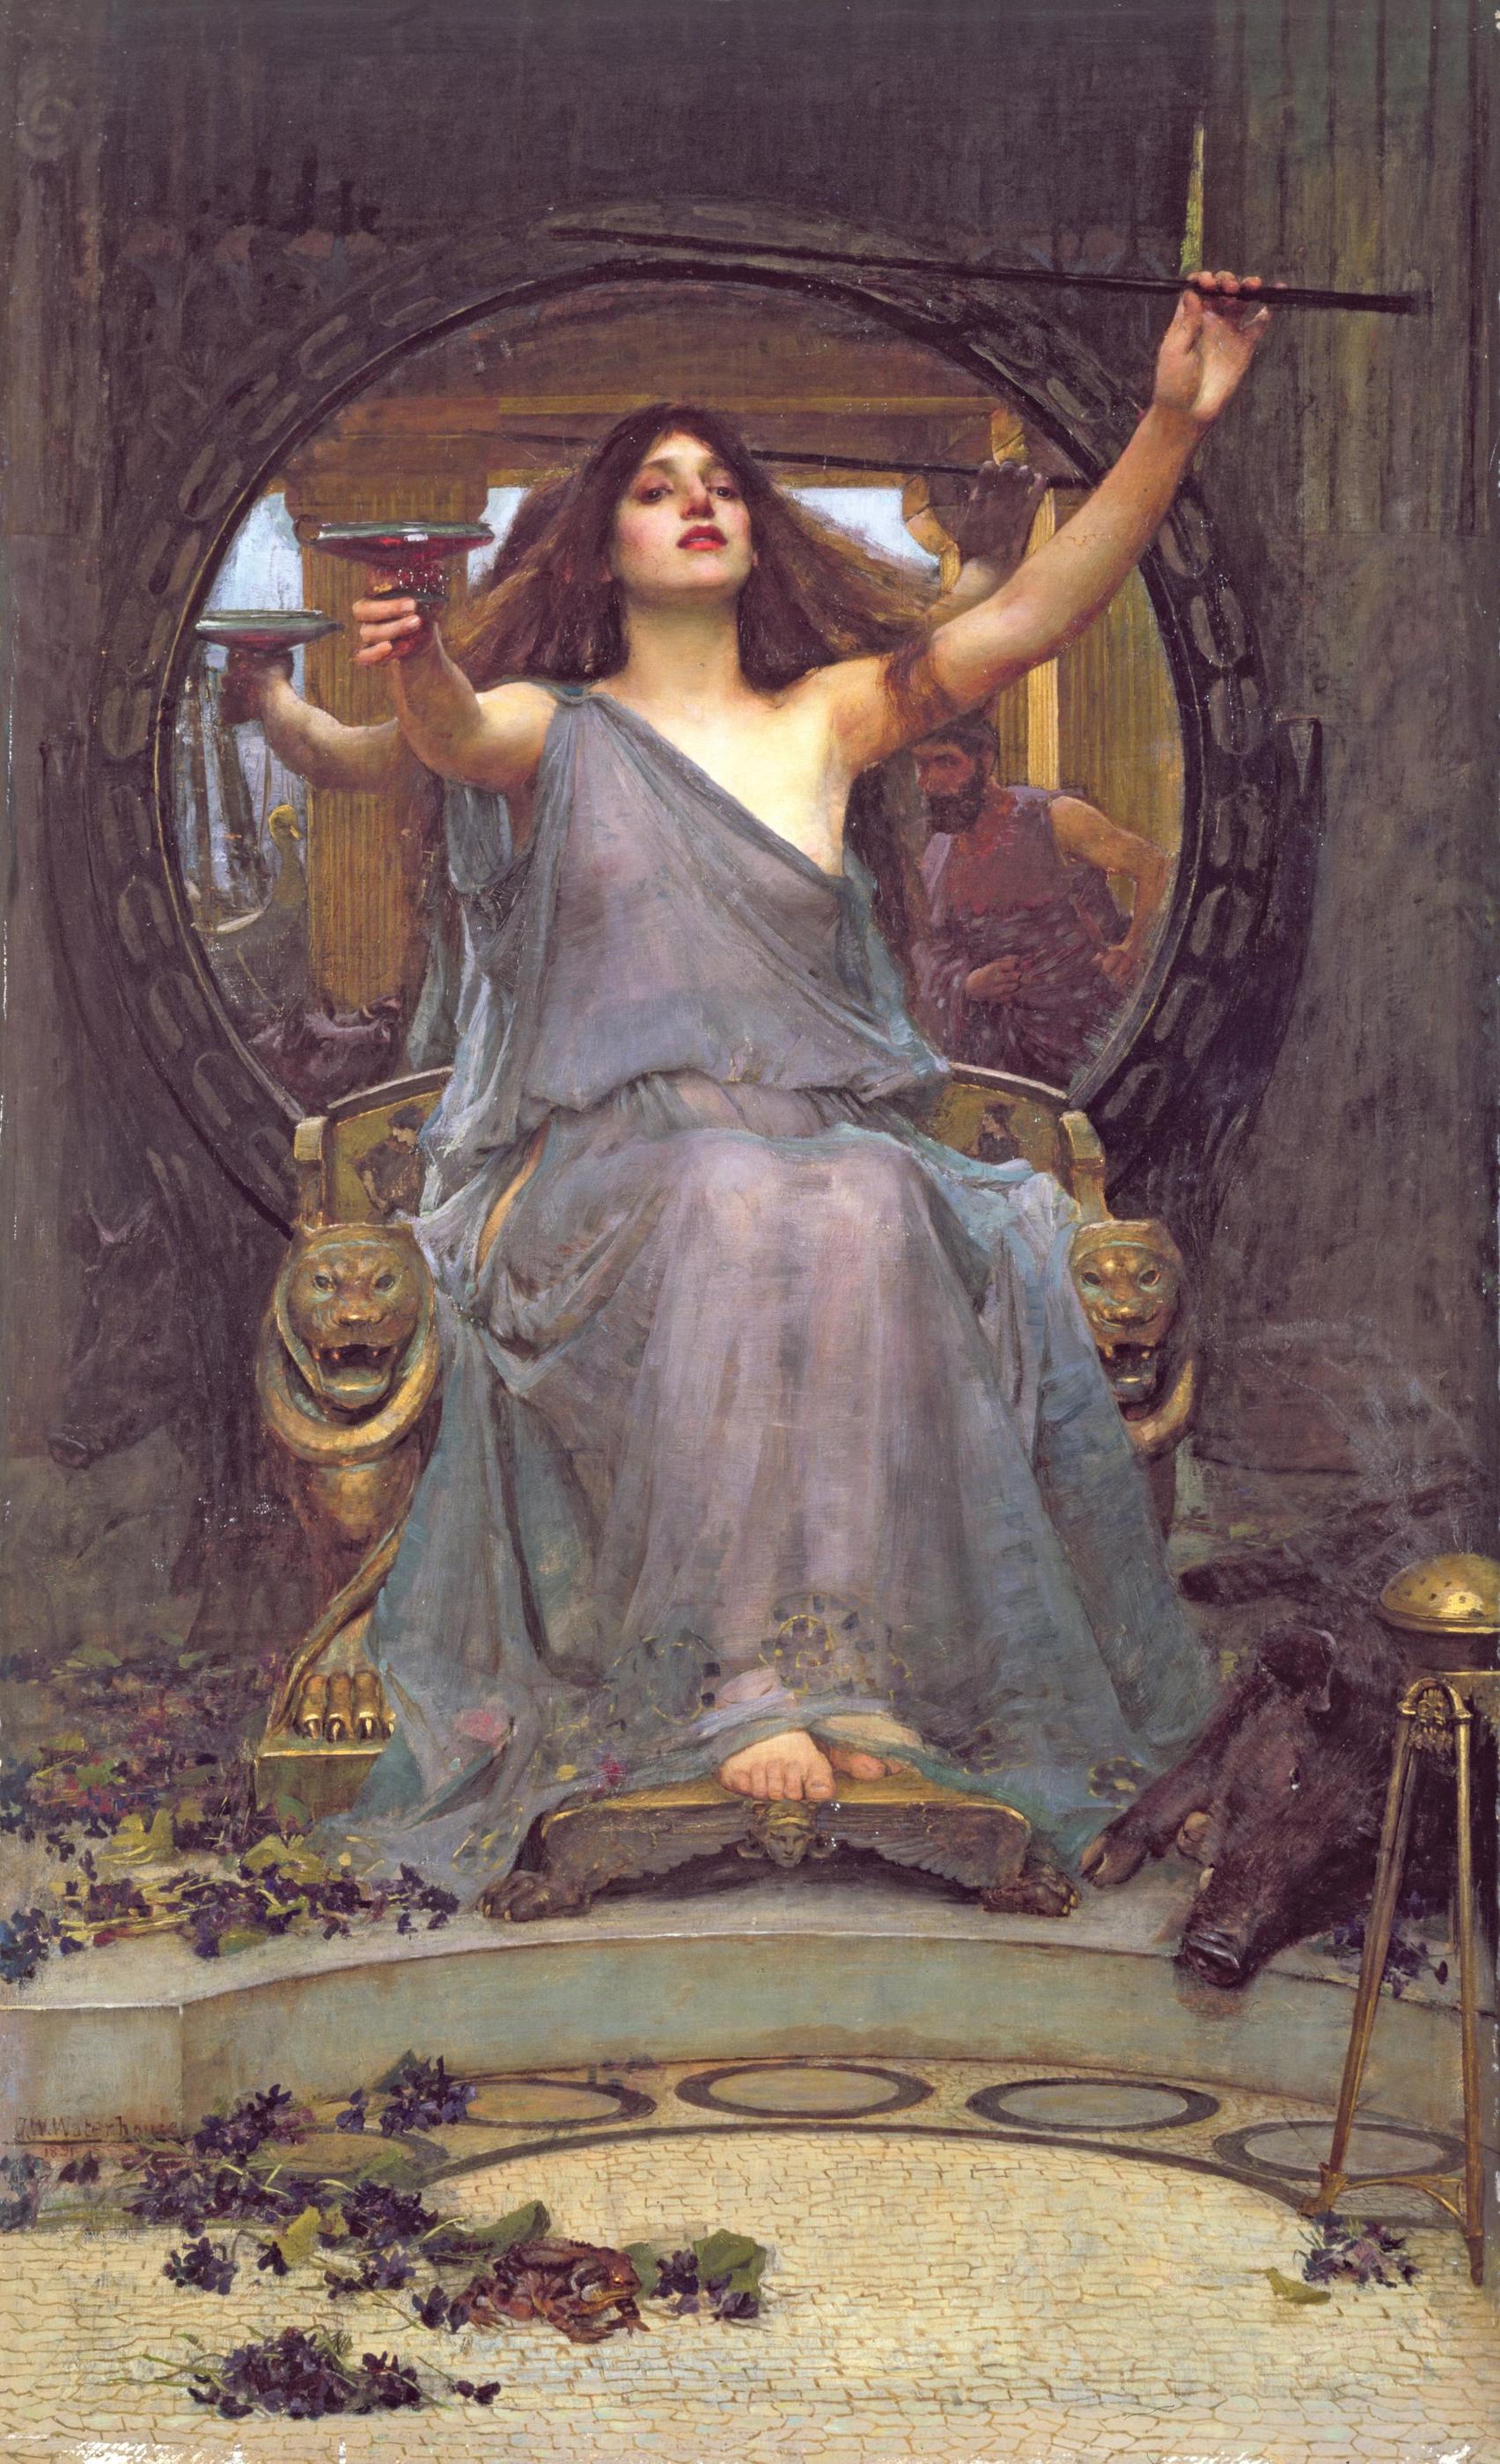 उलिसिस को प्याला देती सरसी by John William Waterhouse - 1891 - 175 cm × 92 cm 